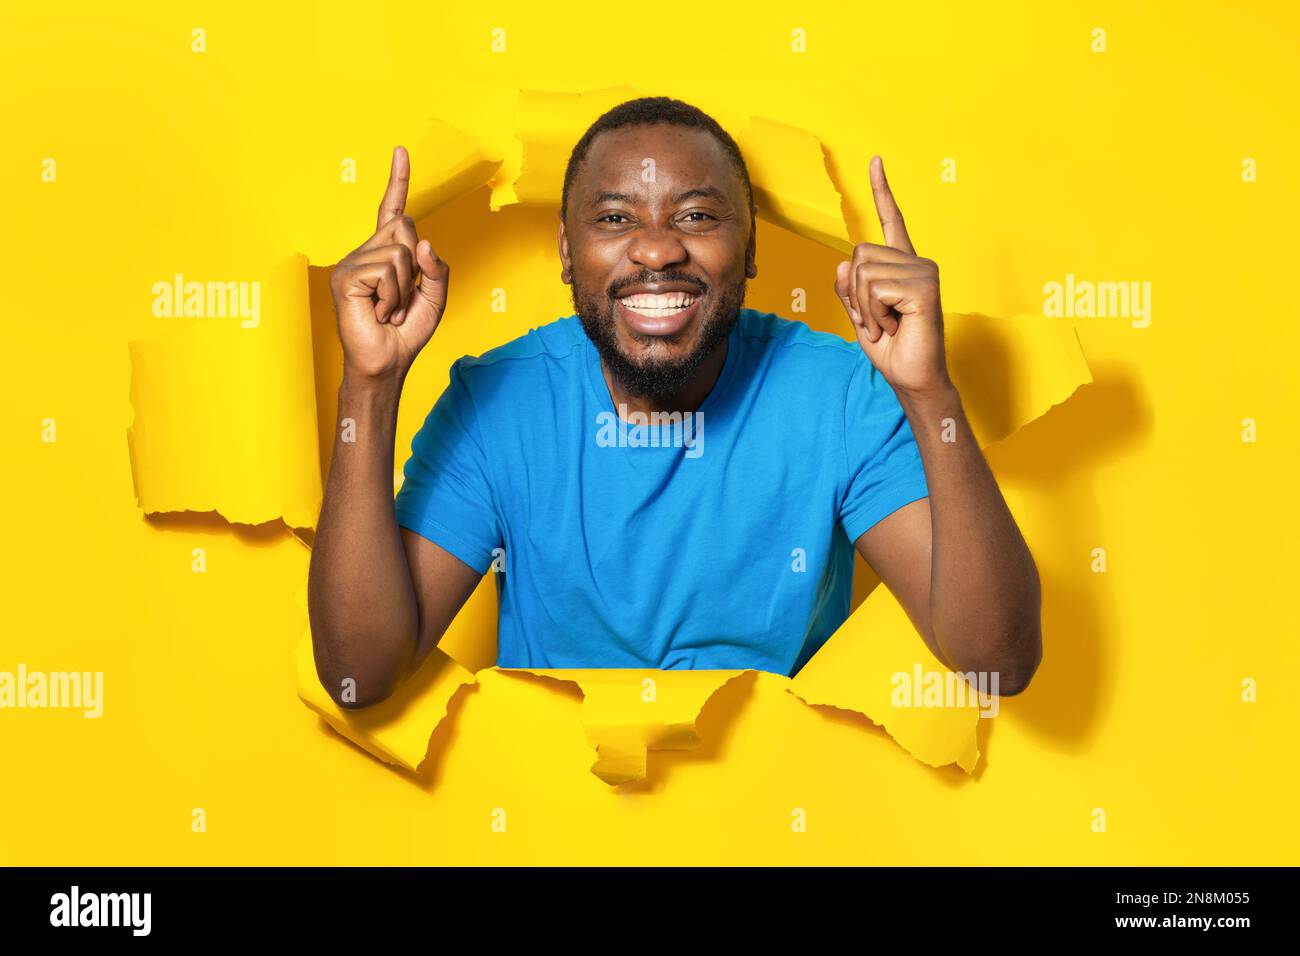 Porträt eines aufgeregten afroamerikanischen Mannes, der mit den Fingern nach oben zeigt und lächelt, der in einem zerrissenen Papierloch auf gelbem Hintergrund steht Stockfoto